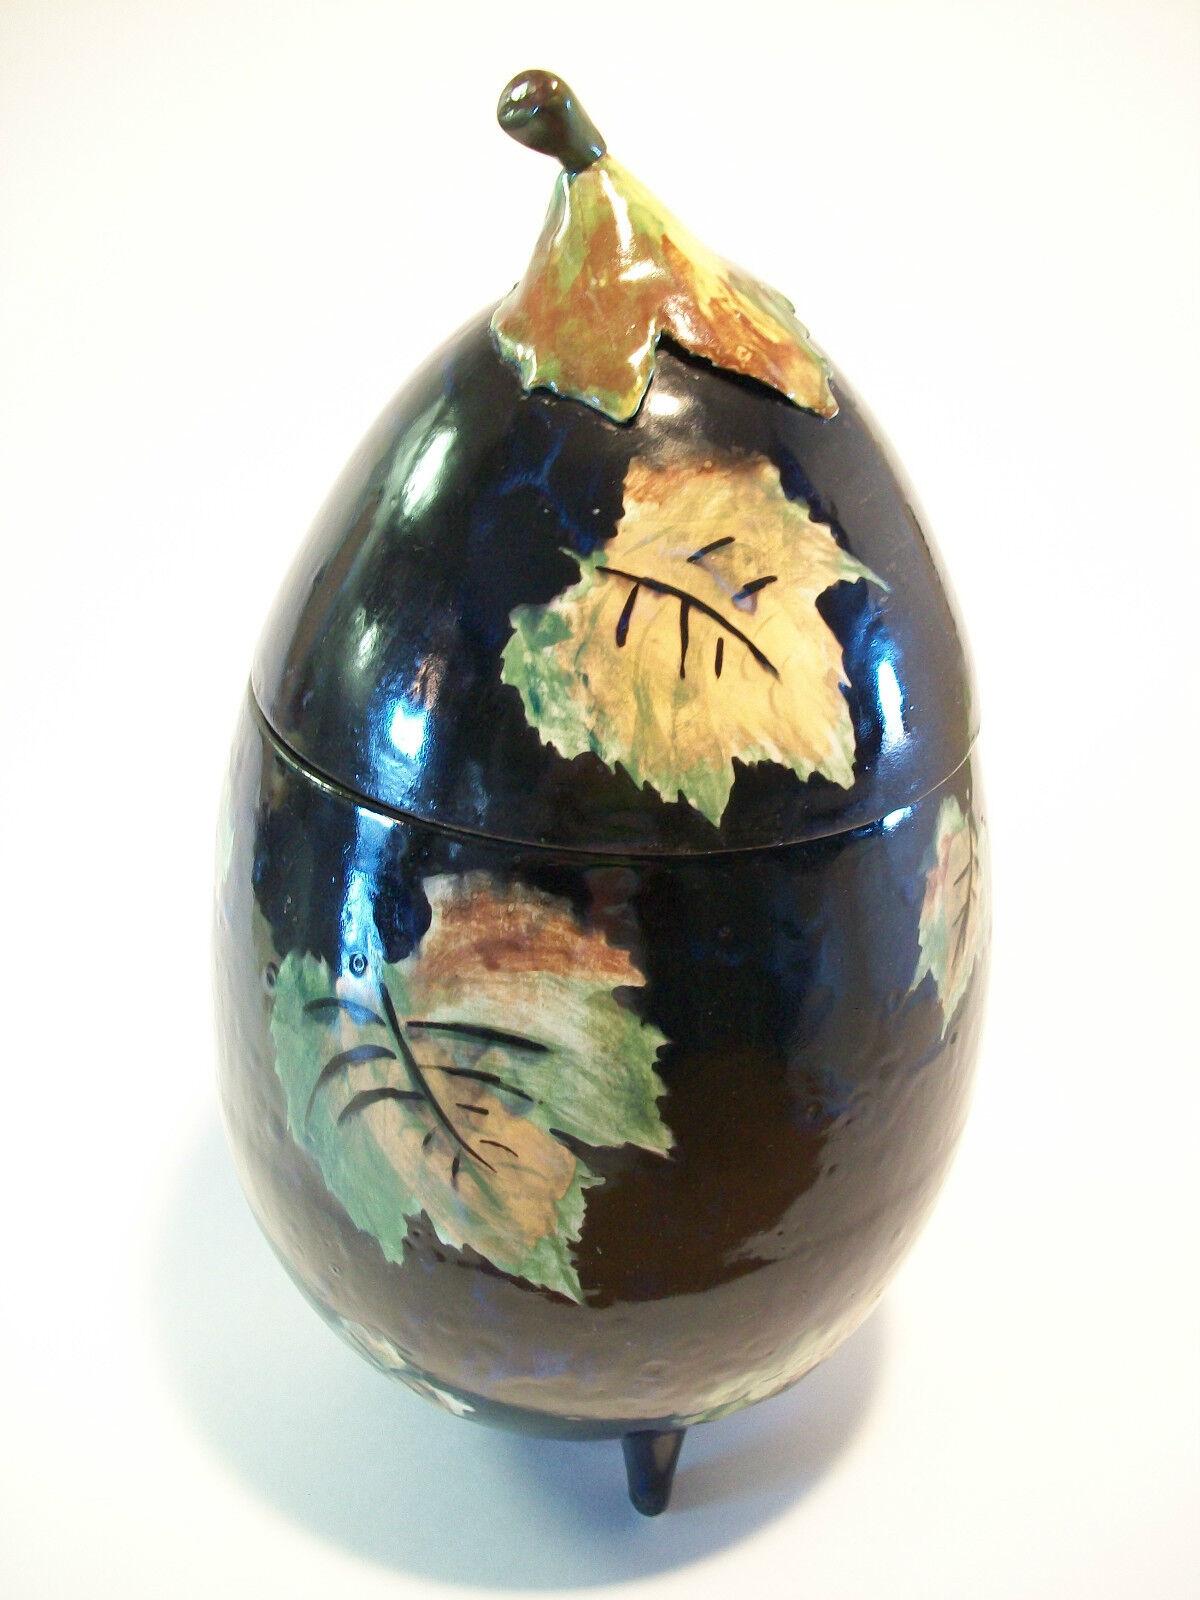 Vintage Majolika handbemaltes Glas mit Deckel - Auberginenform - geformte Keramik - unsigniert - Mitte 20. Jahrhundert.

Ausgezeichneter Vintage-Zustand - kleinere Herstellungsfehler, wie sie bei handgefertigten Gegenständen vorkommen (wie